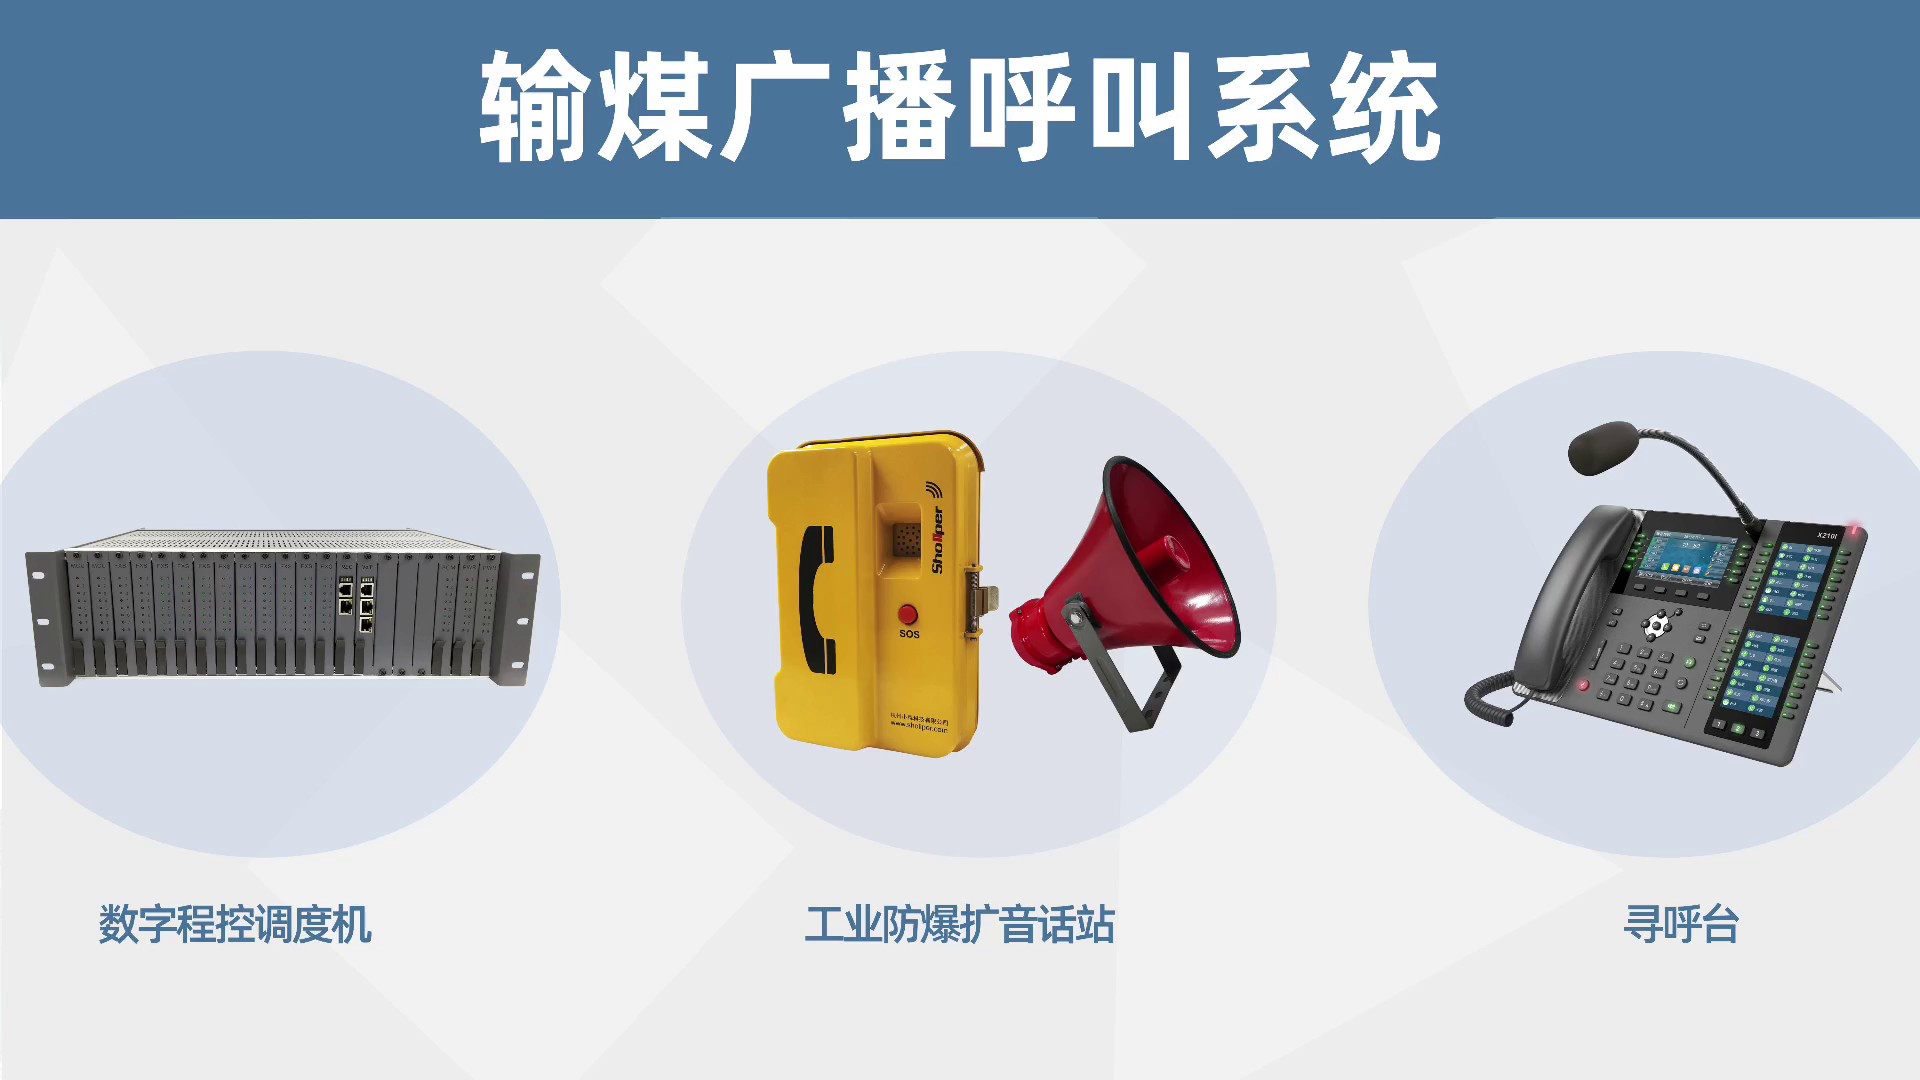 上海电厂输煤广播呼叫系统供应商,输煤广播呼叫系统